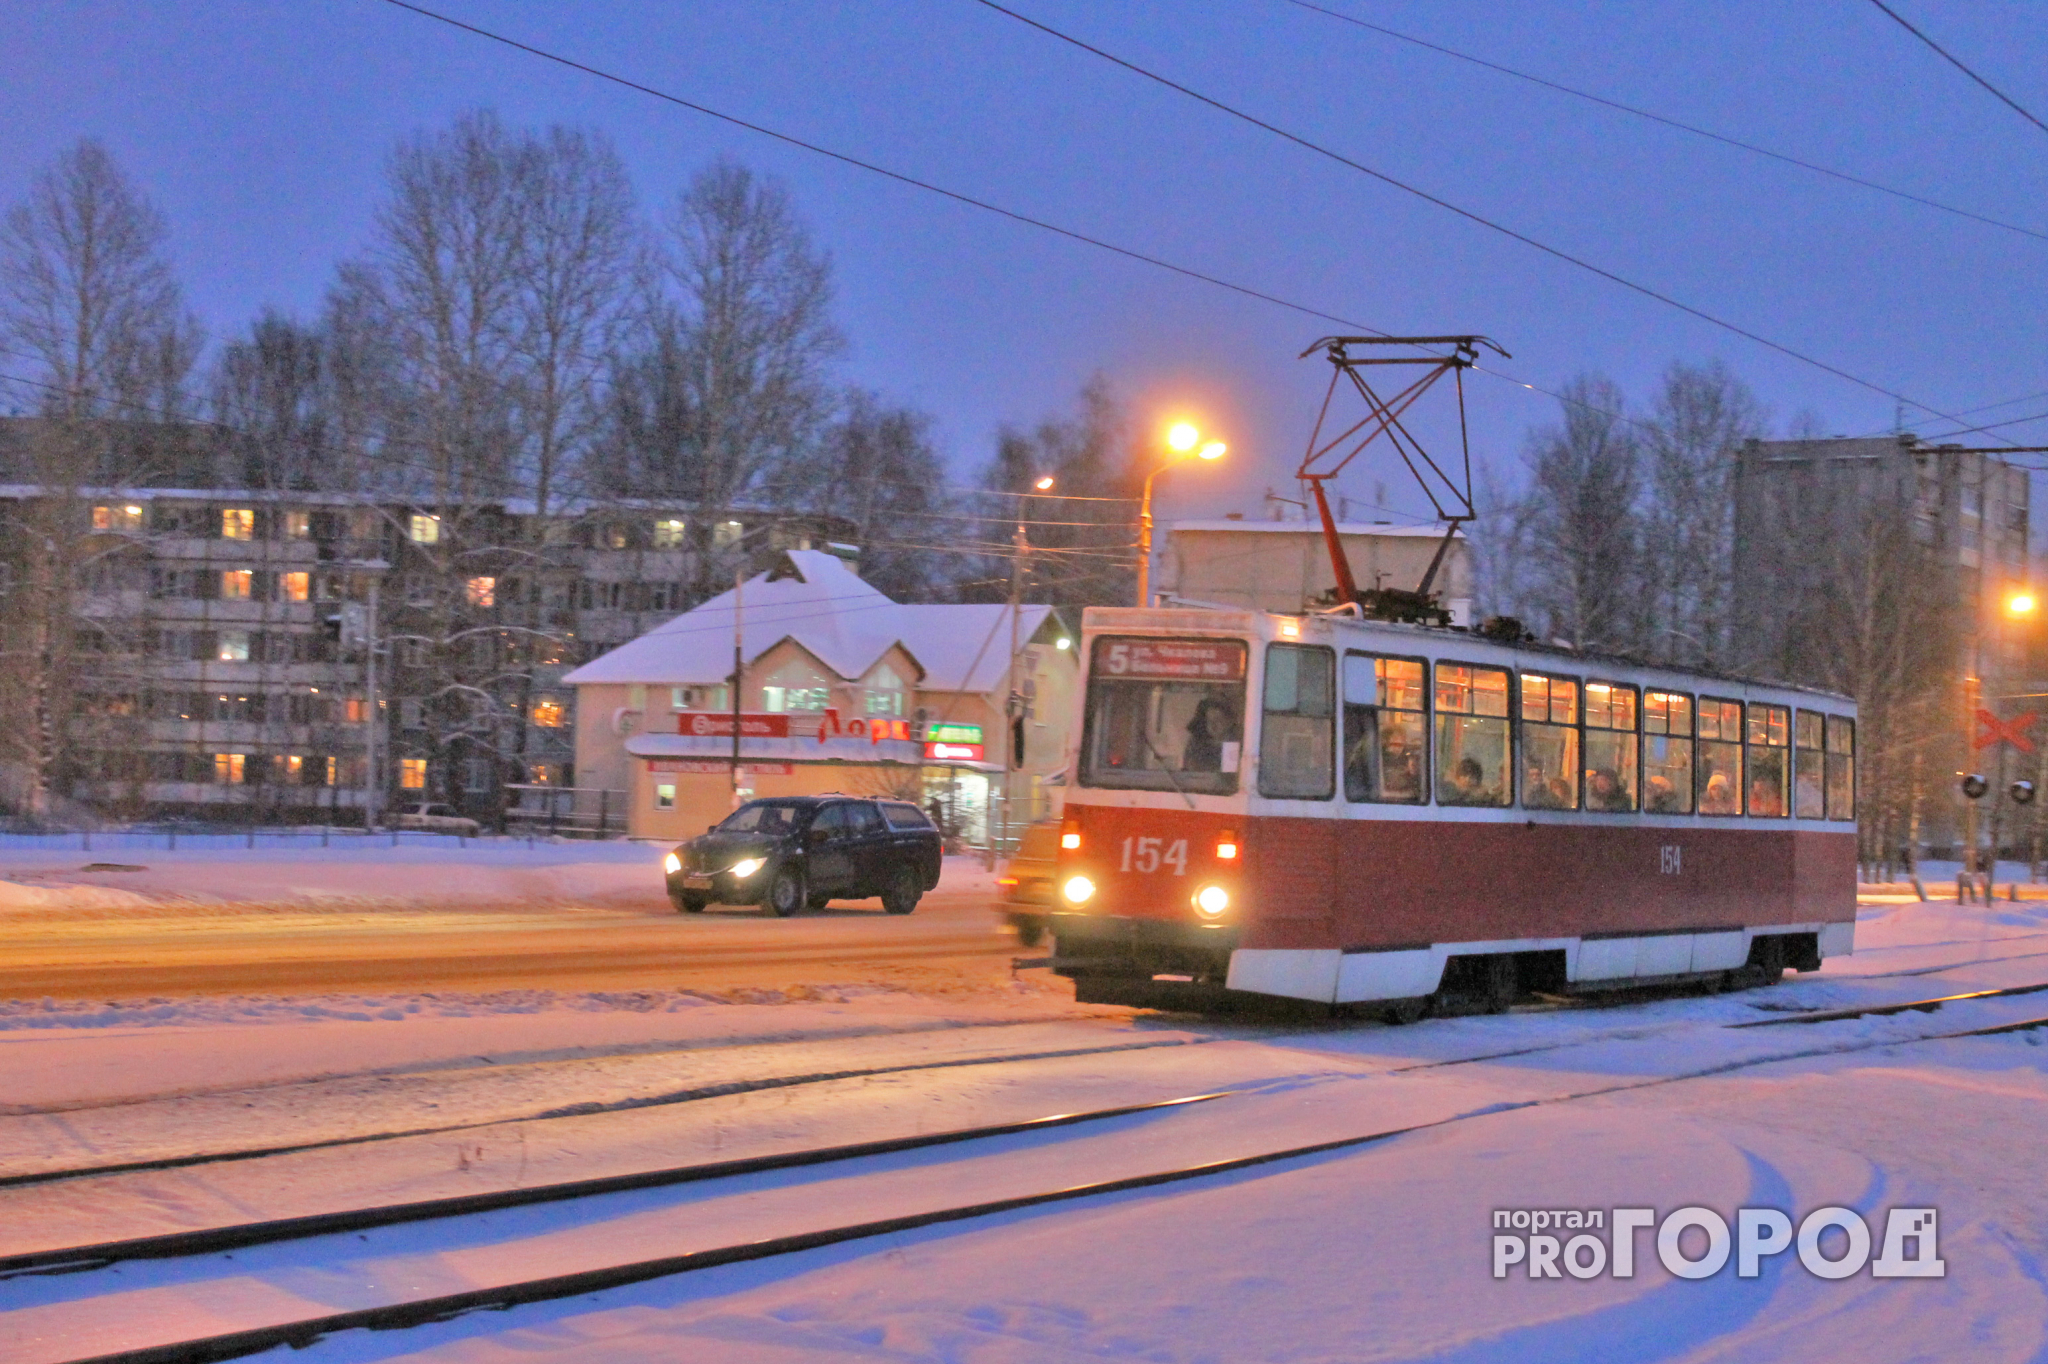 Энергоэкономичные трамвайные вагоны начнут производить в Нижнем Новгороде